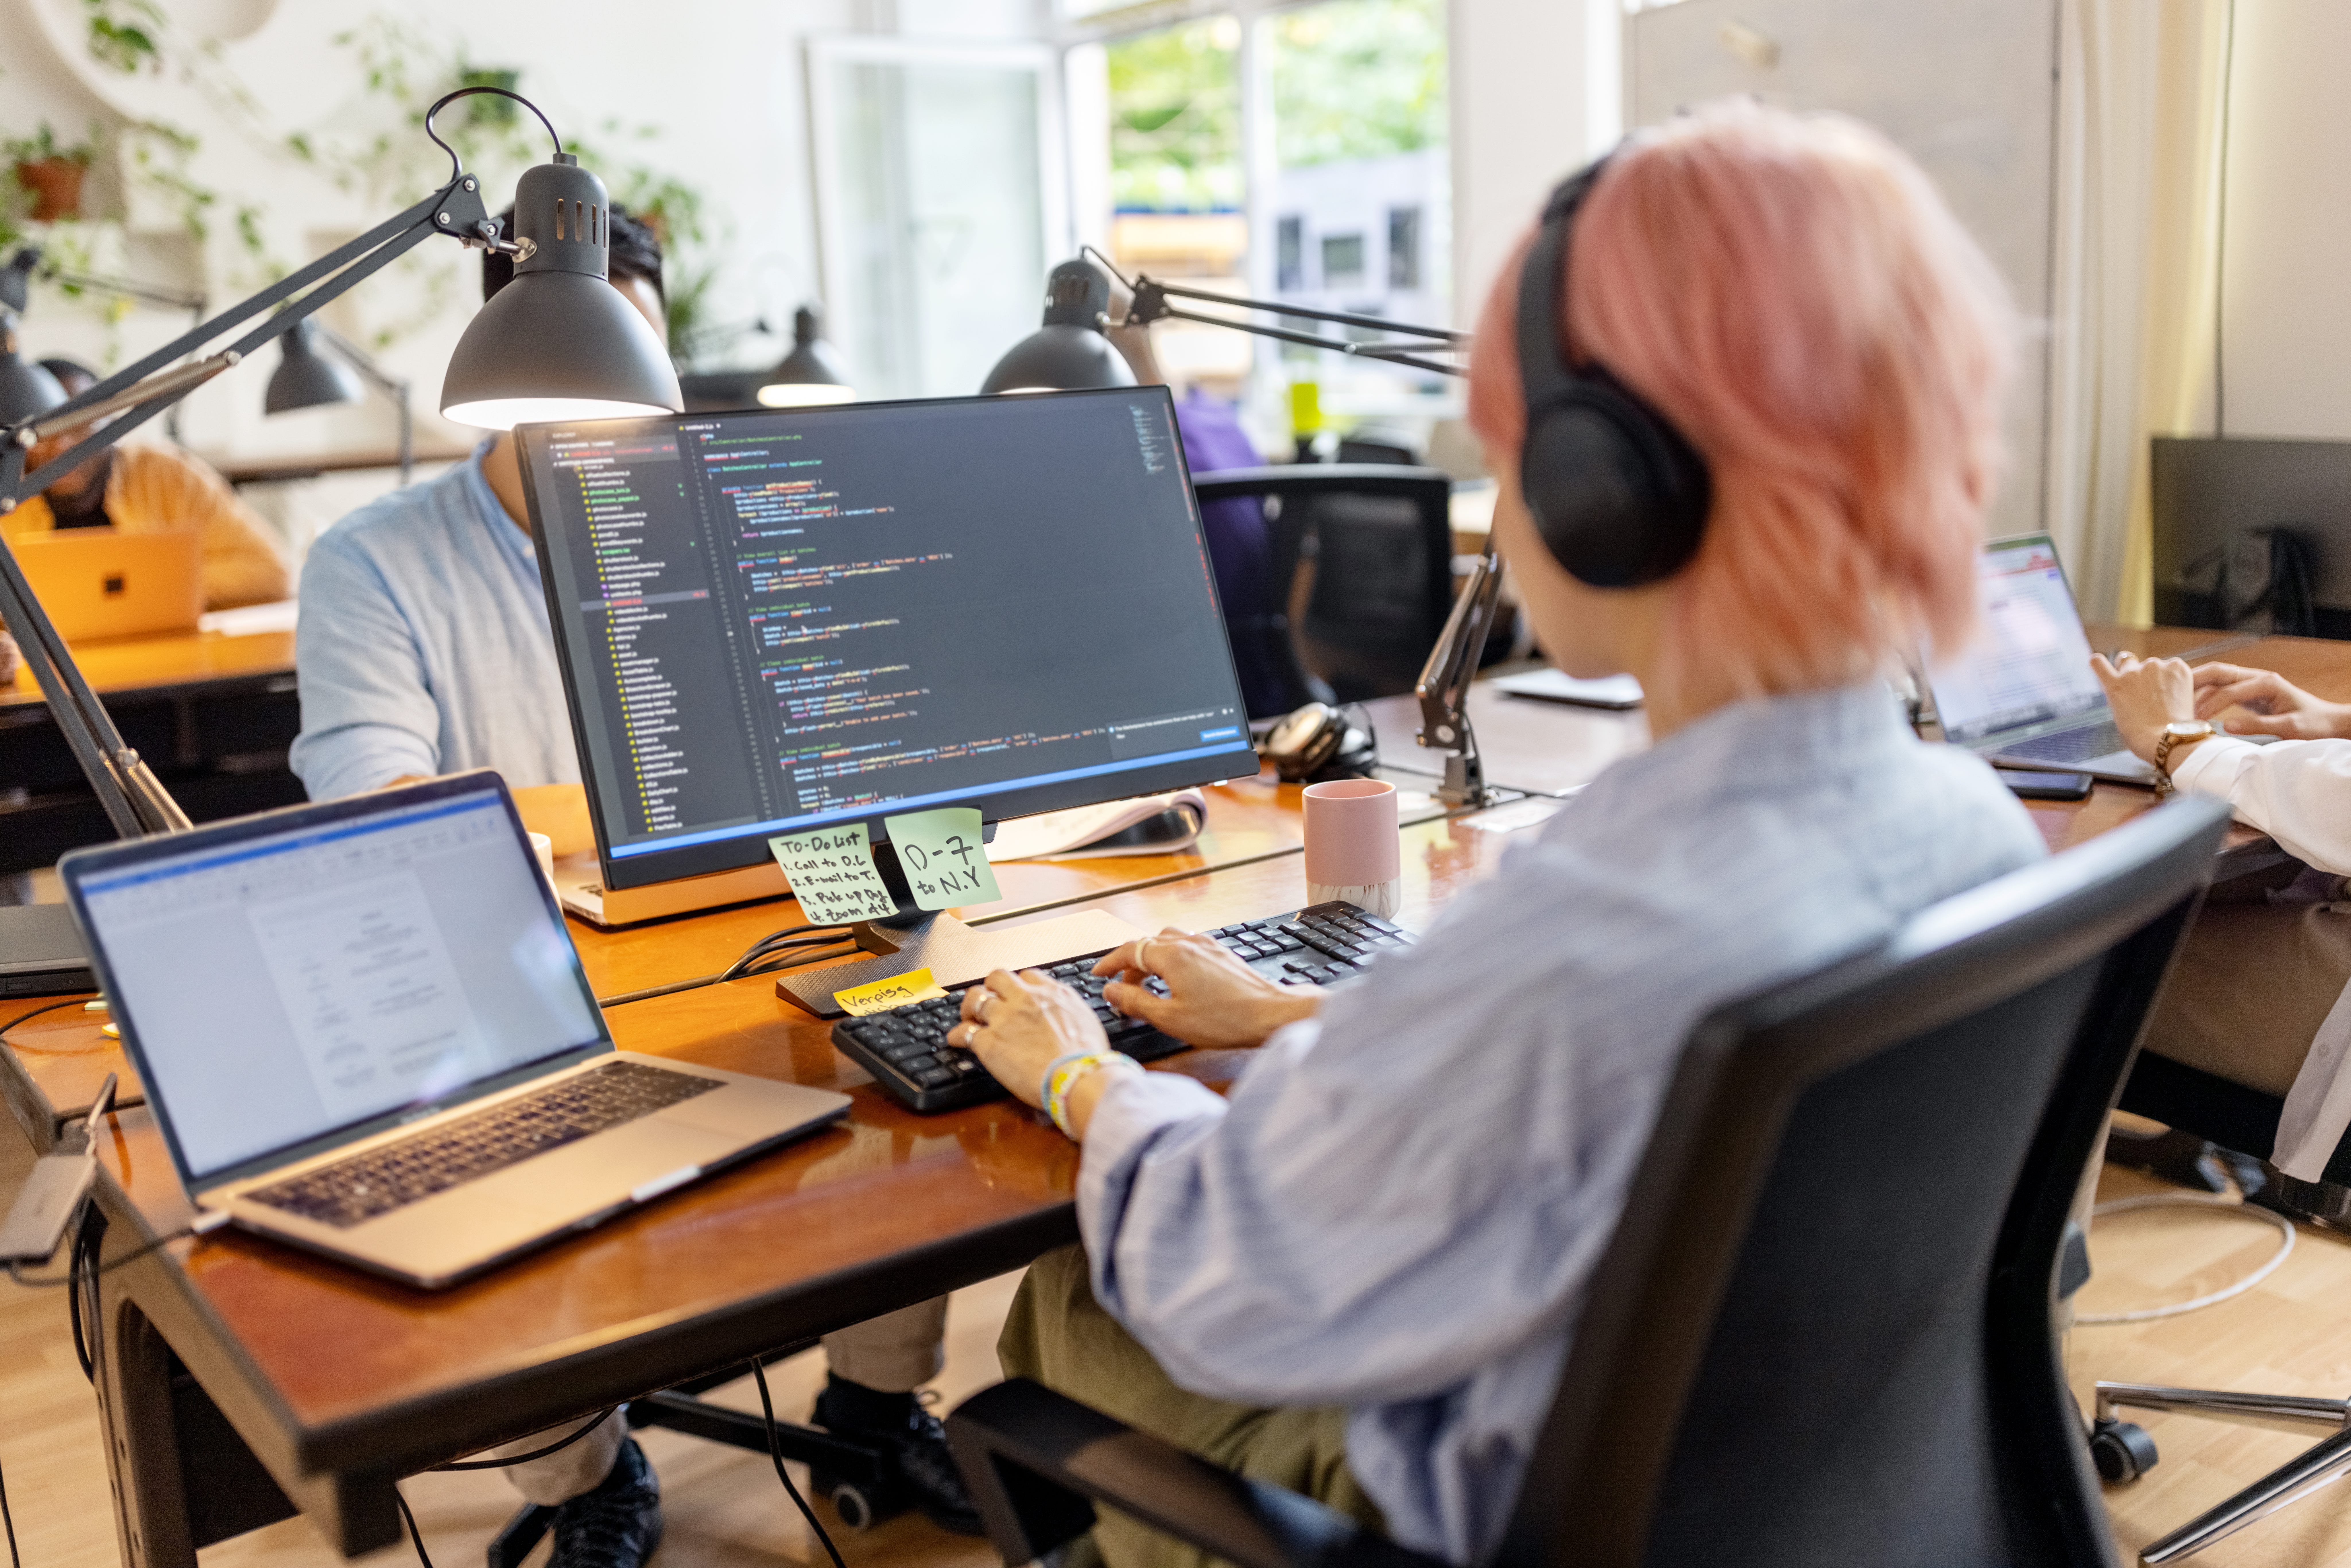 Ein Softwareentwickler trägt Kopfhörer, während er an einem Schreibtisch sitzt und am Computer programmiert.